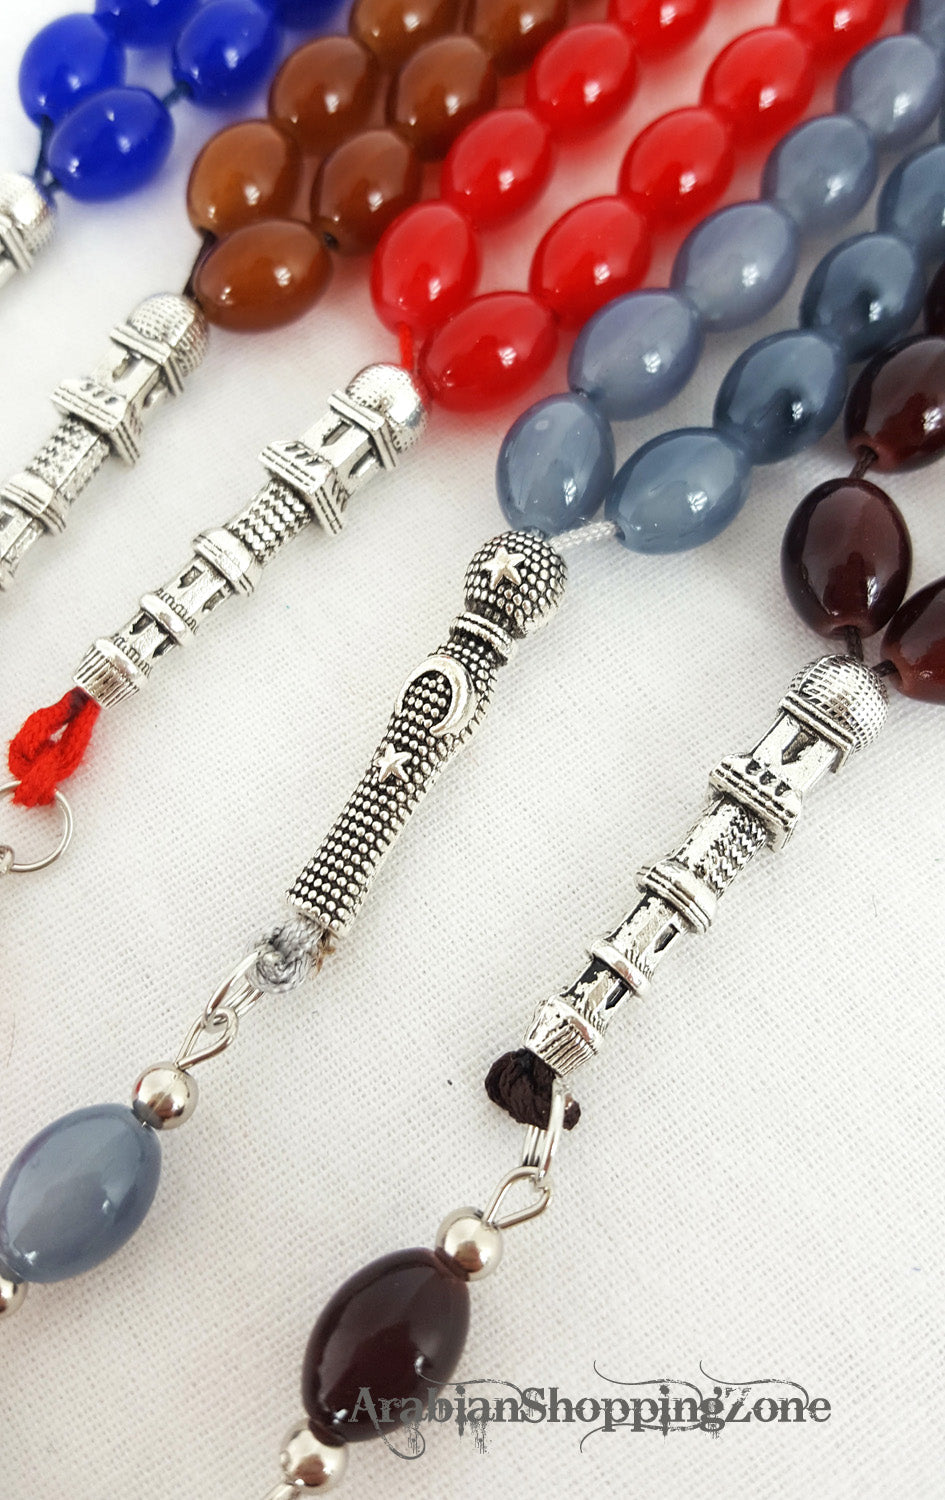 TESBIH Islamic Prayer Beads